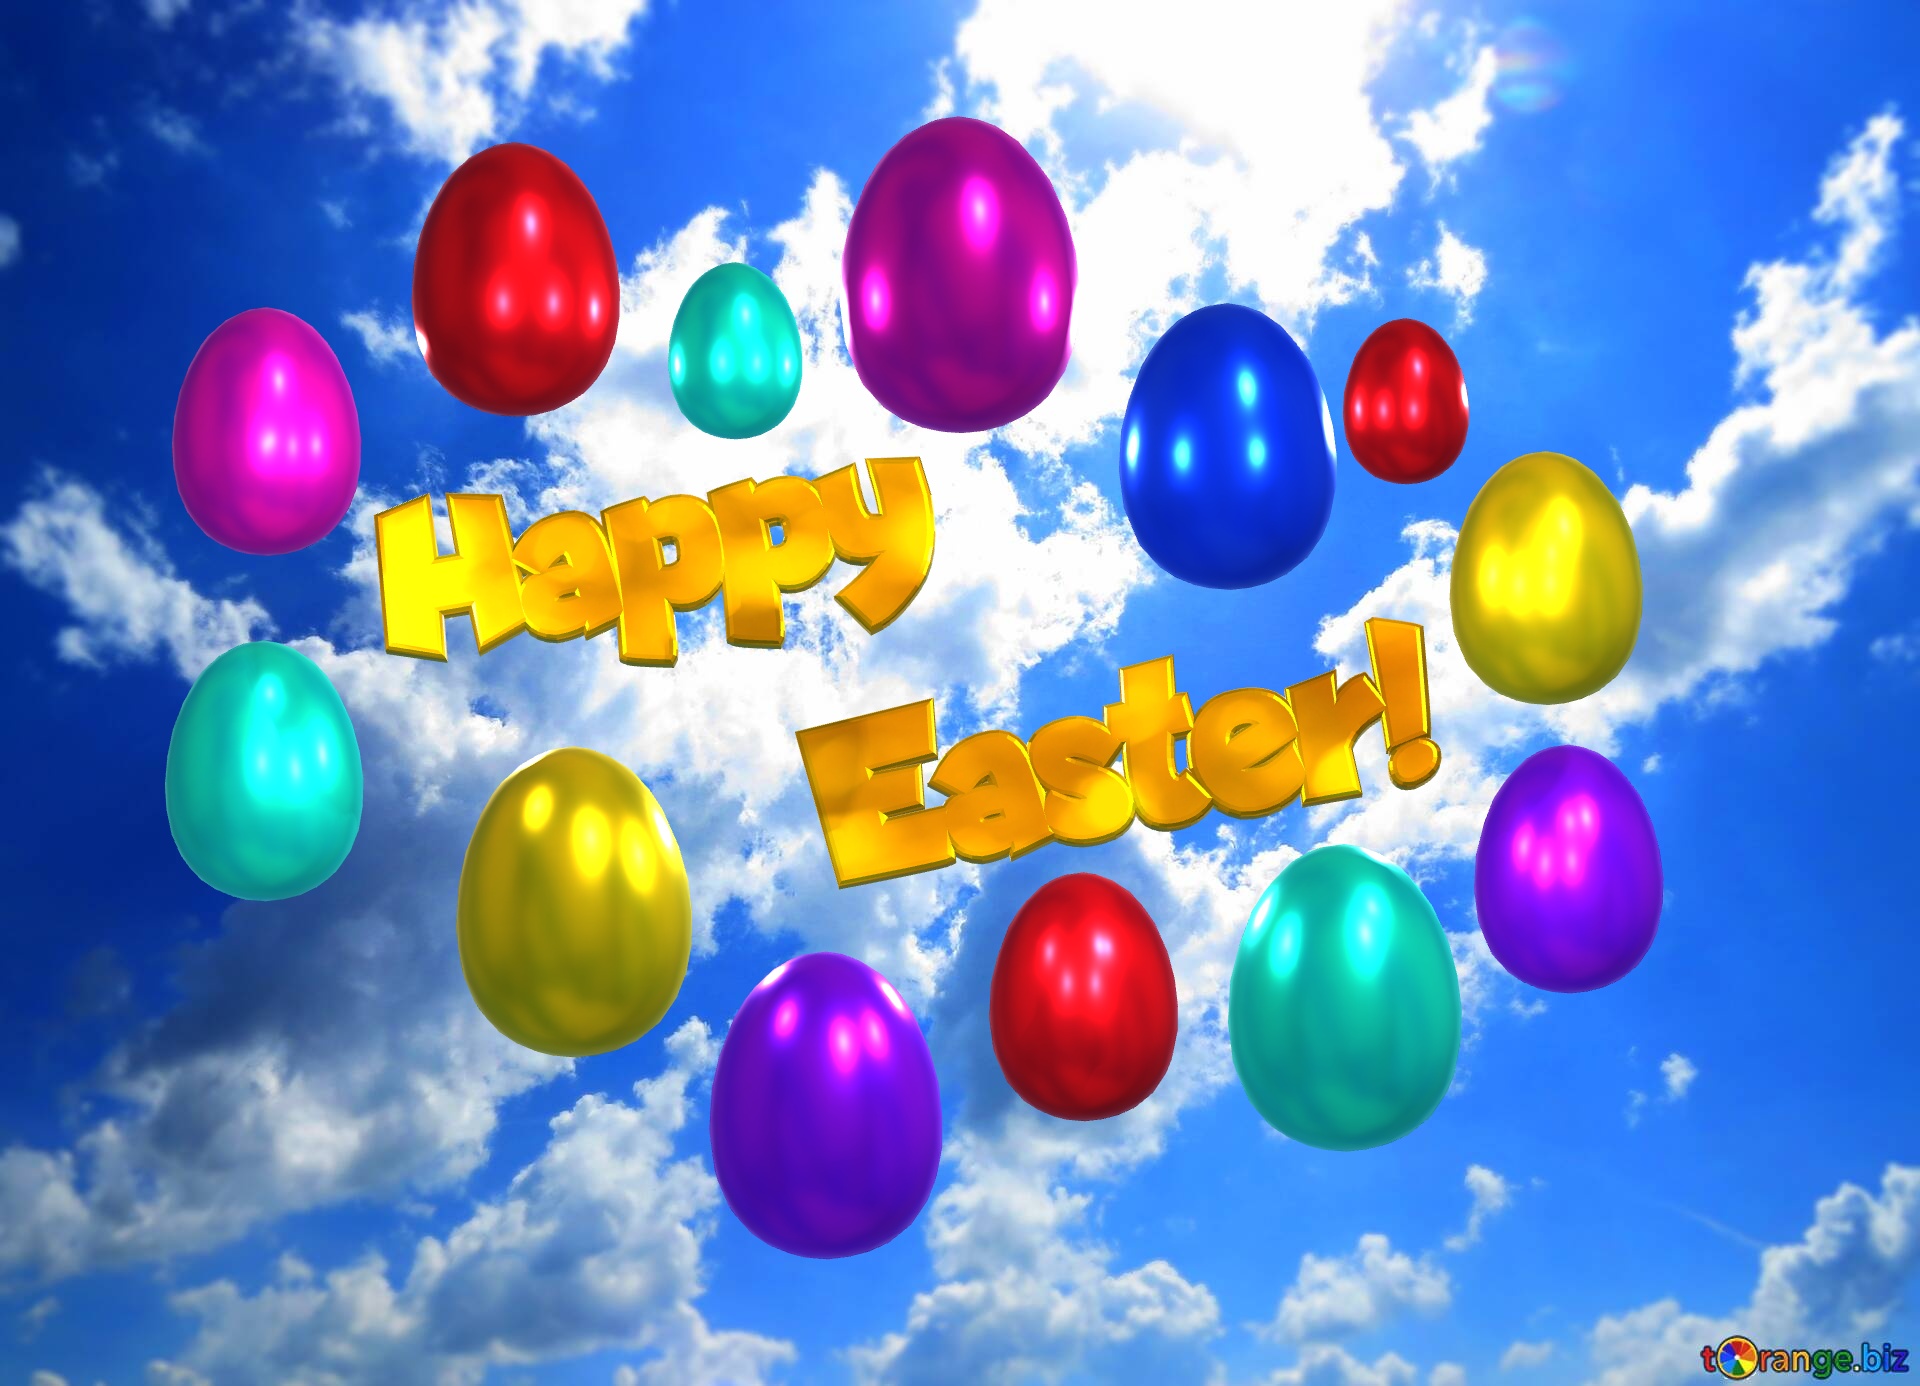 Happy Easter Animated Greeting Card un ciel nuageux et ensoleillé №0